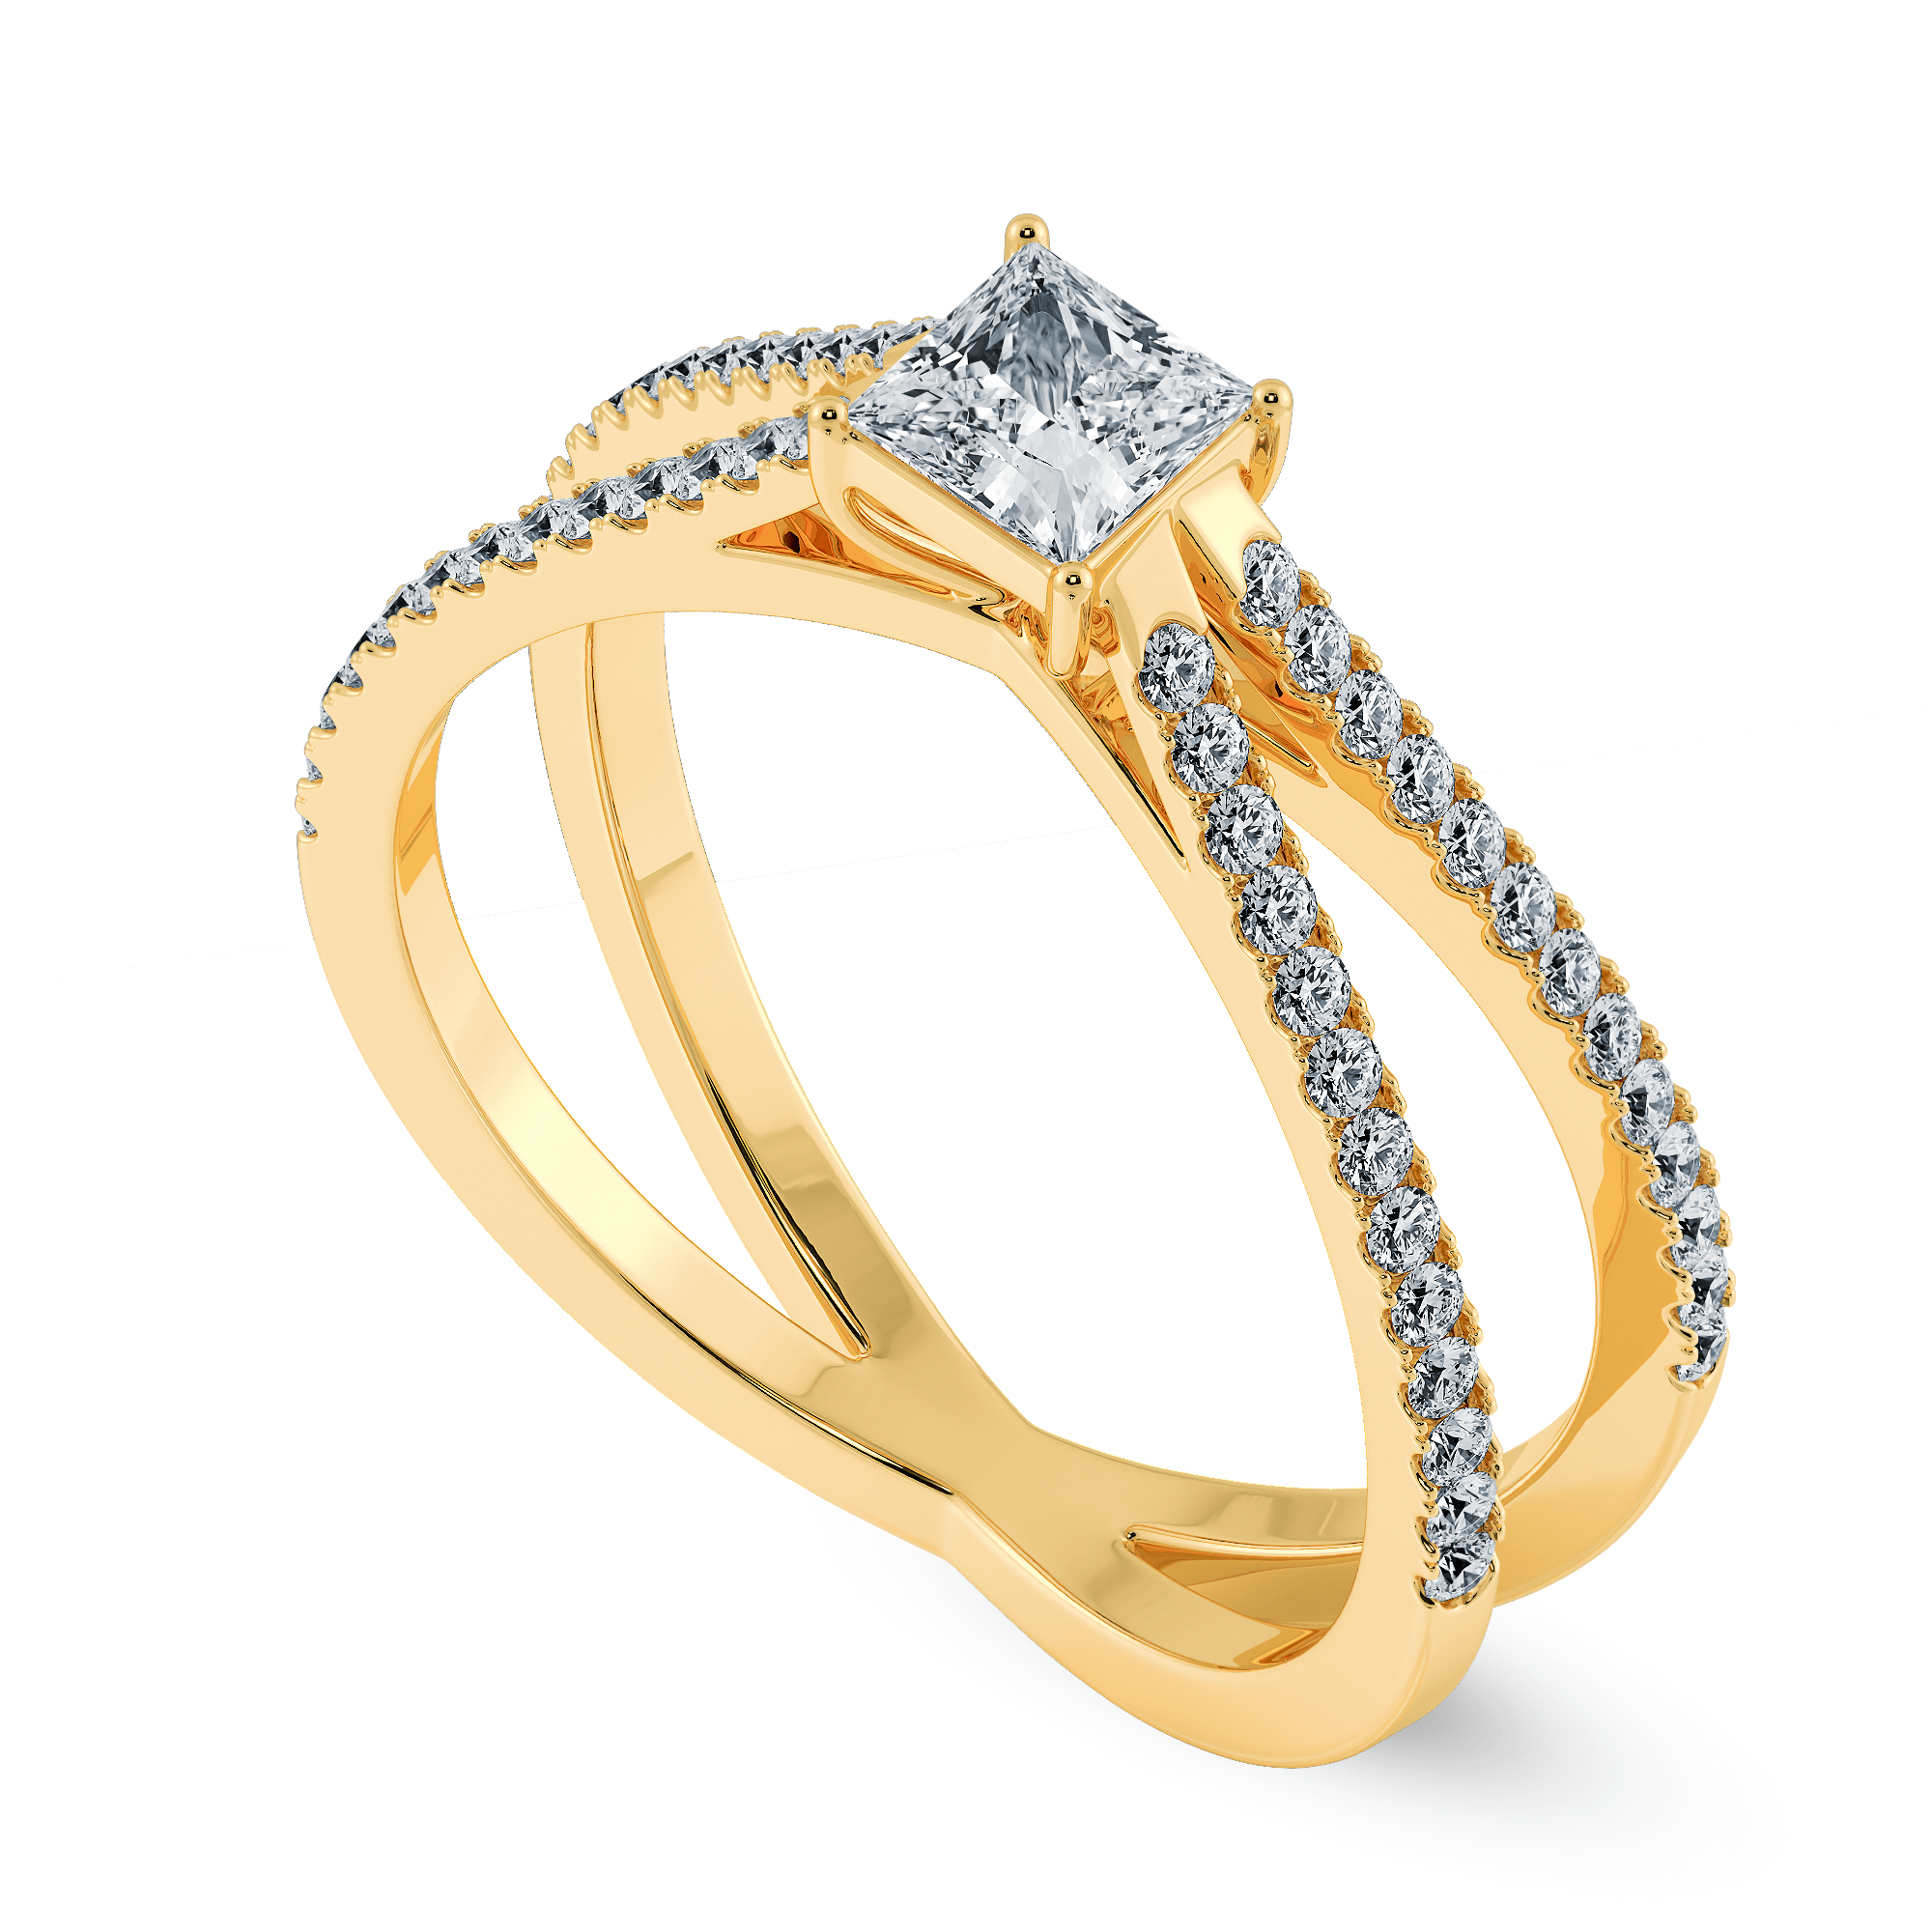 Shimmery Cross-over 18Kt Gold & Diamond Ring